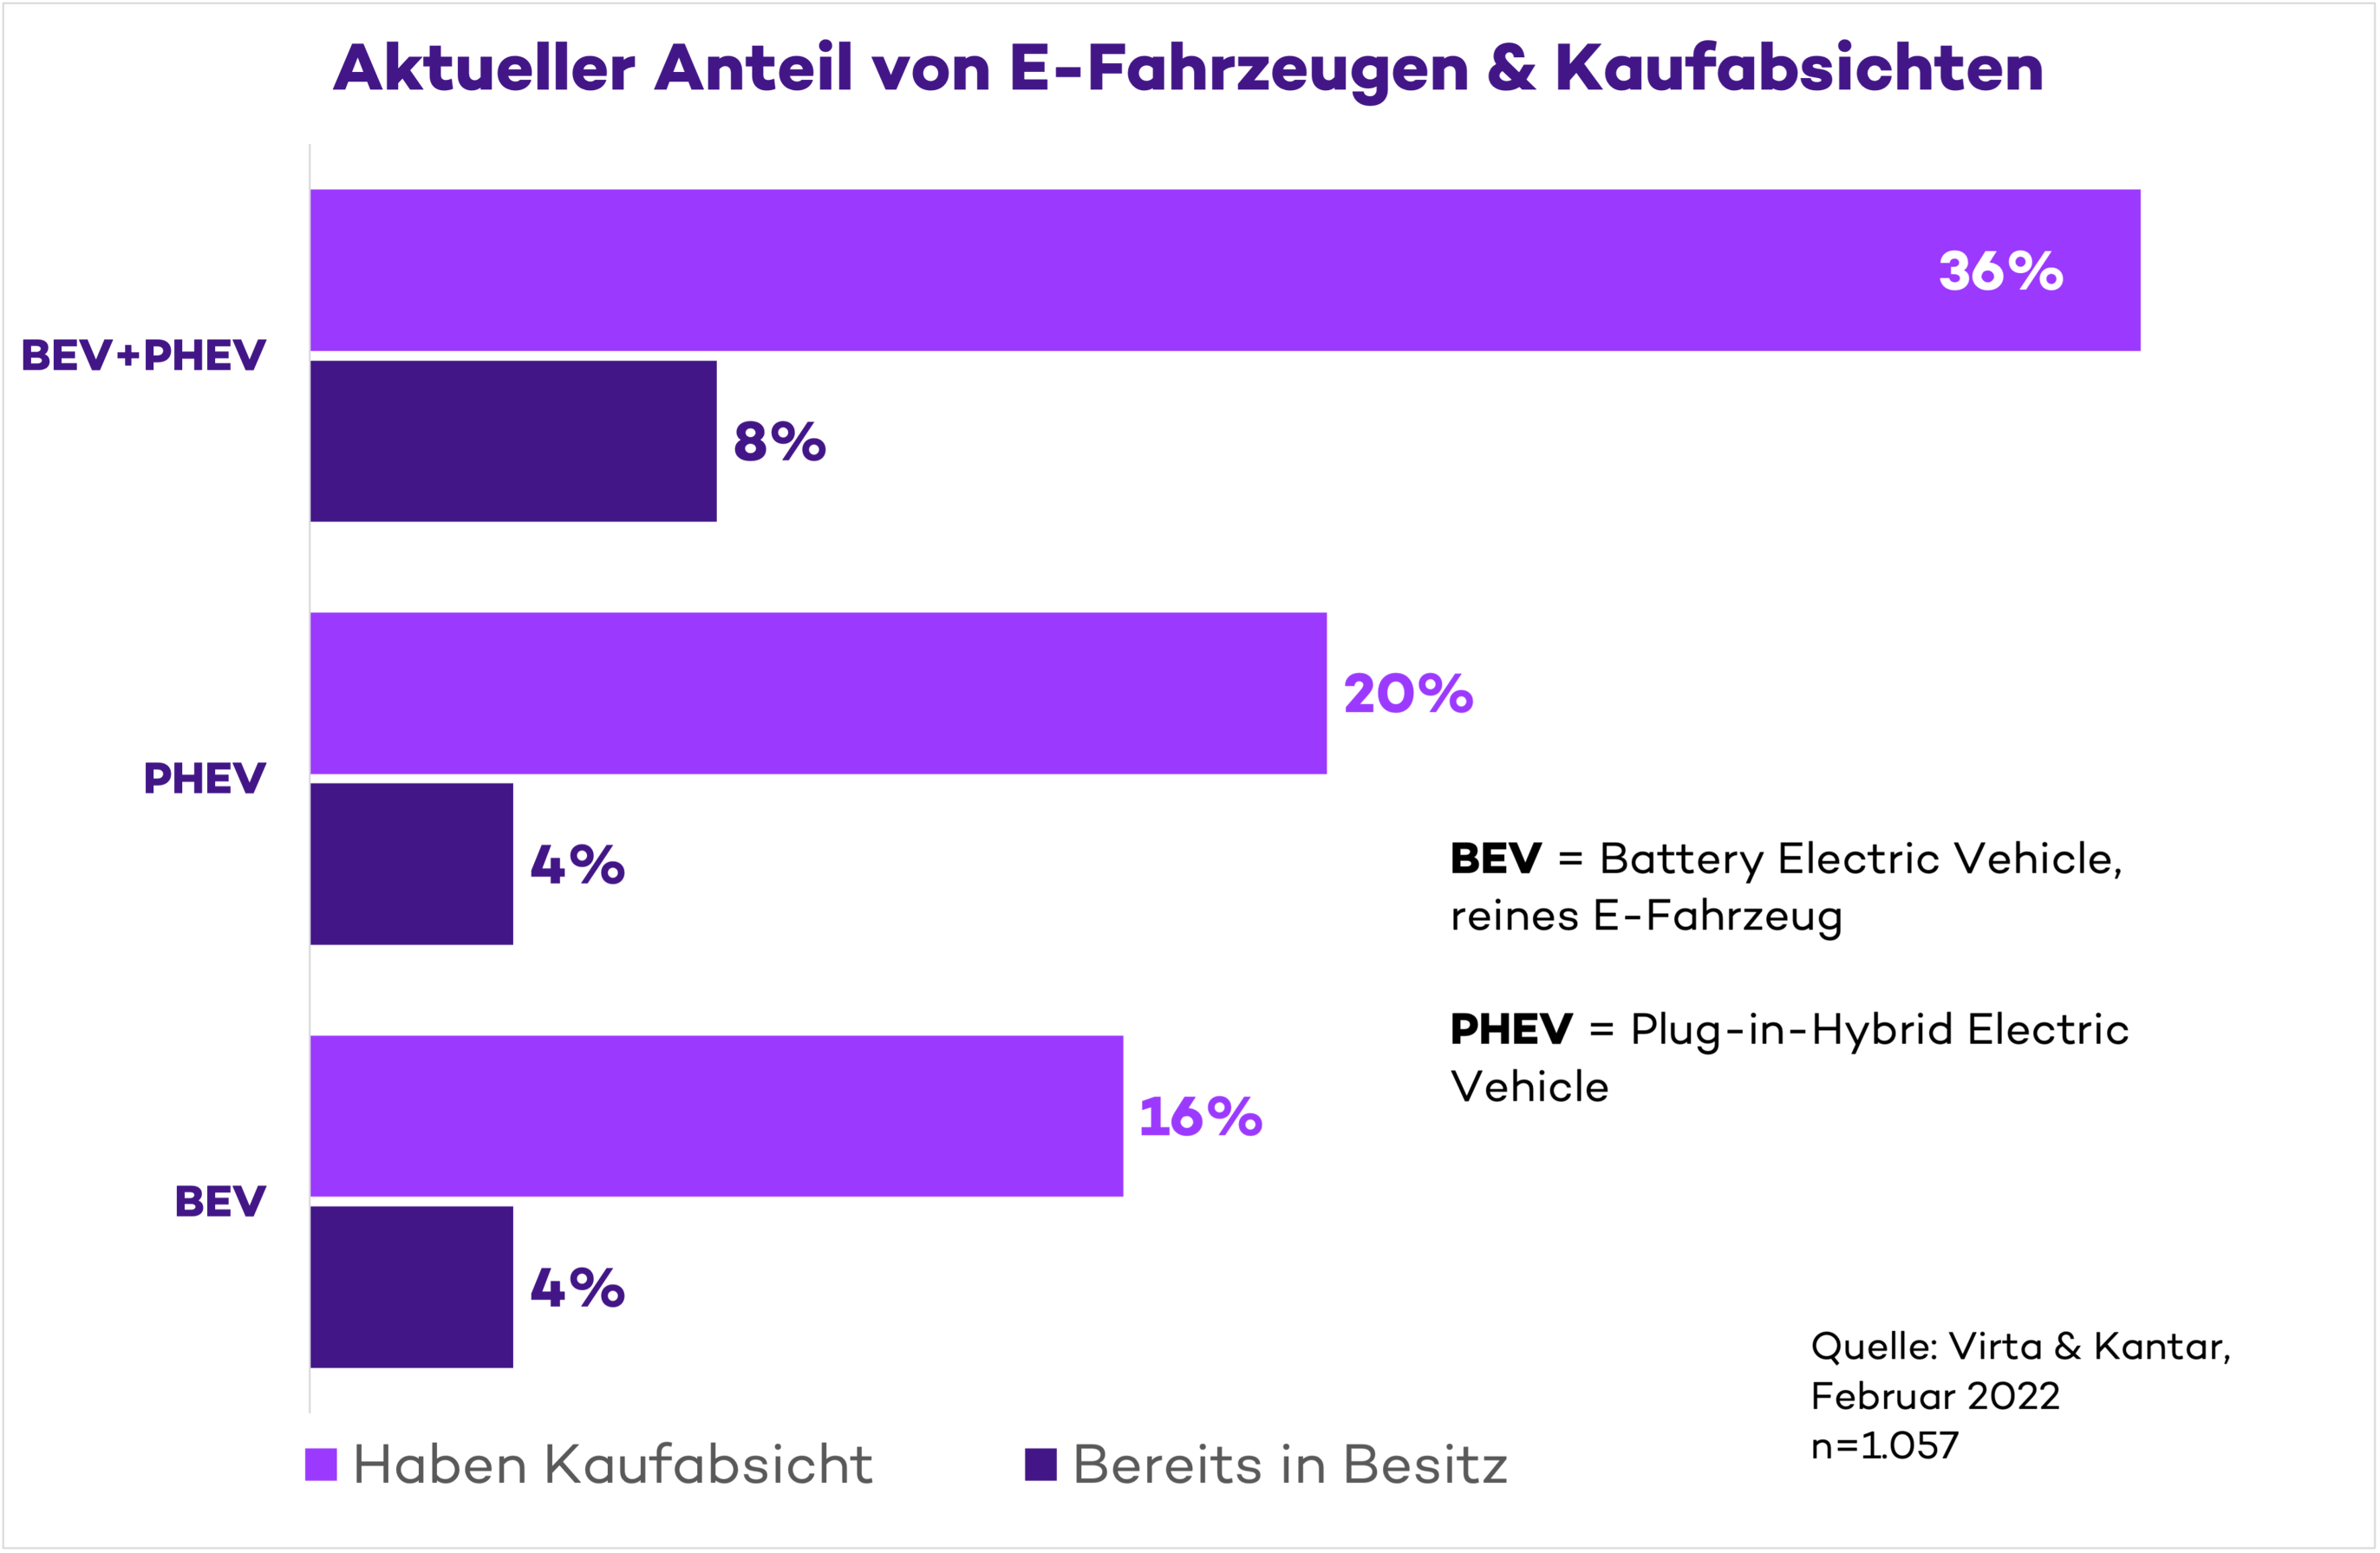 Kantar & Virta Umfrage zur E-Mobilität in Deutschland